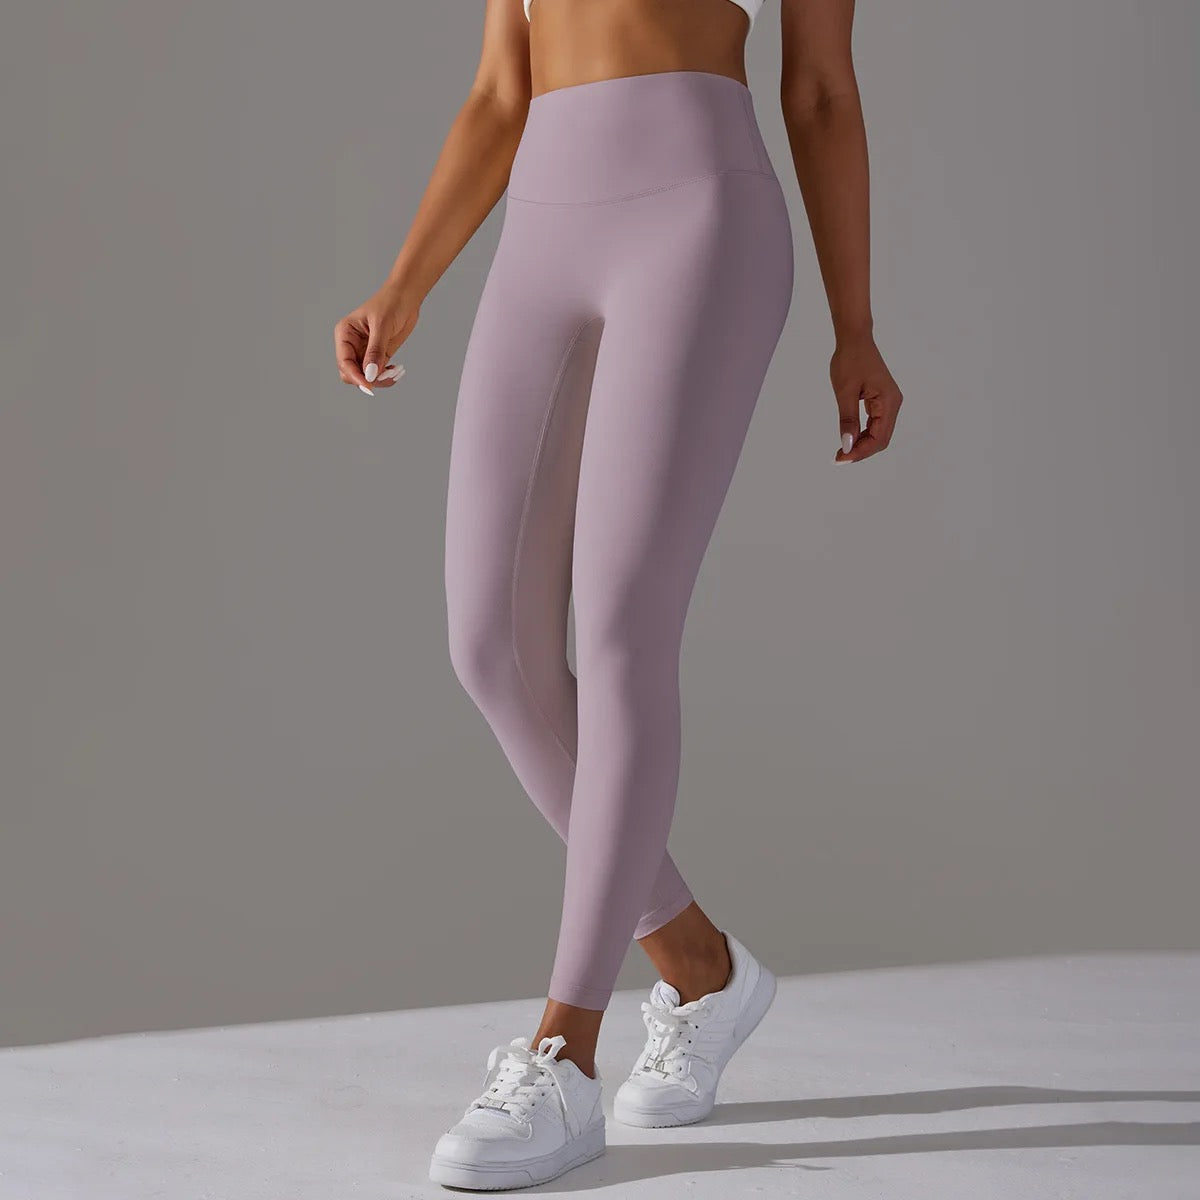 pink sport leggings